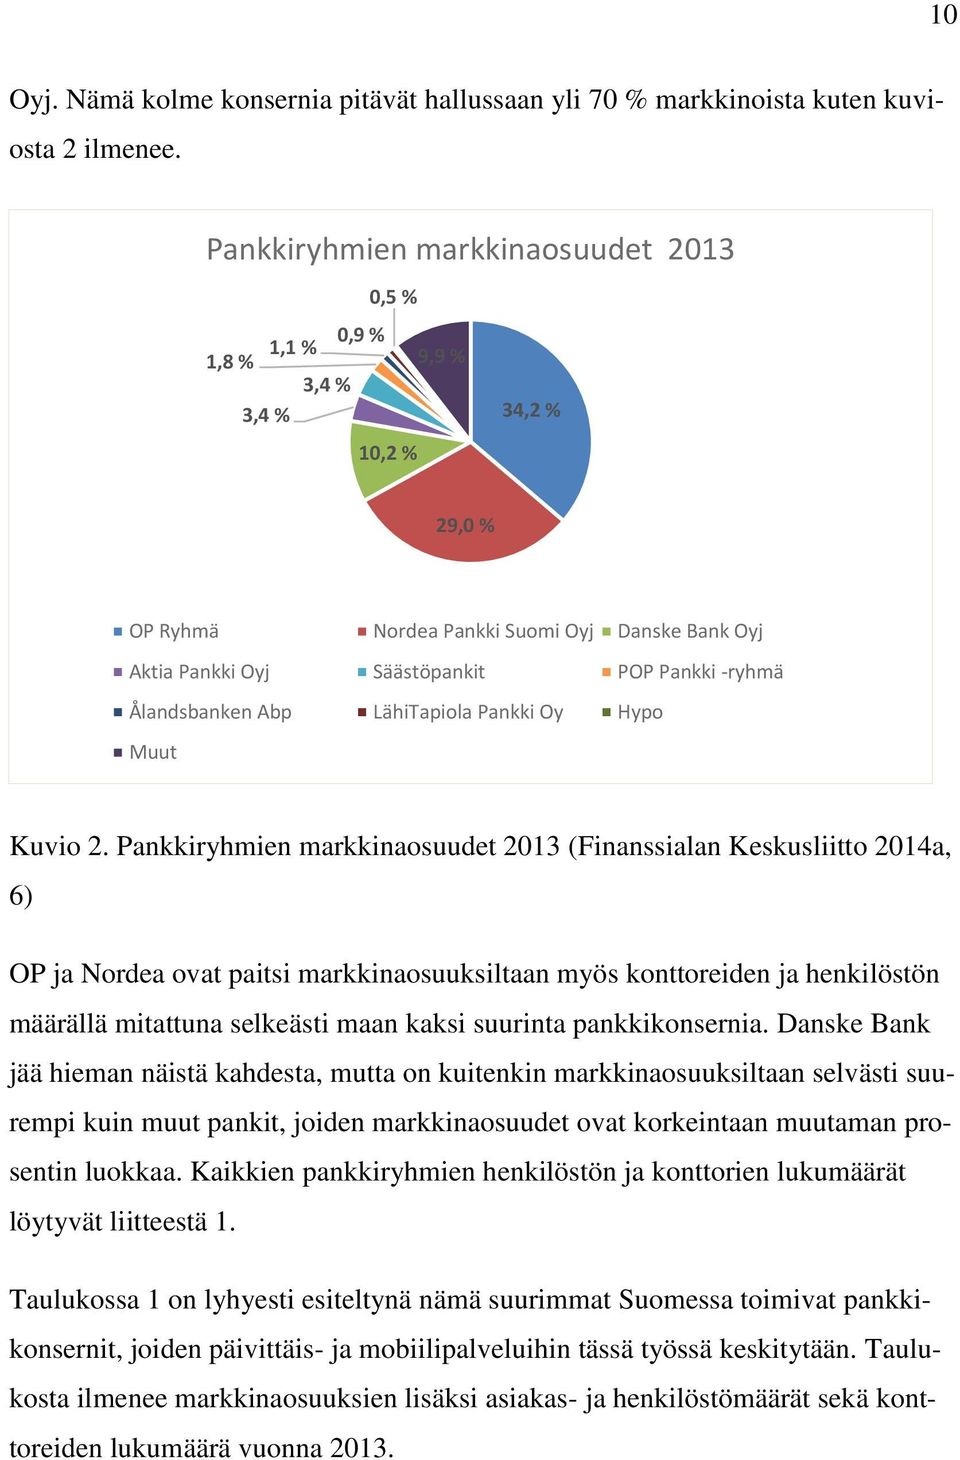 Ålandsbanken Abp LähiTapiola Pankki Oy Hypo Muut Kuvio 2.